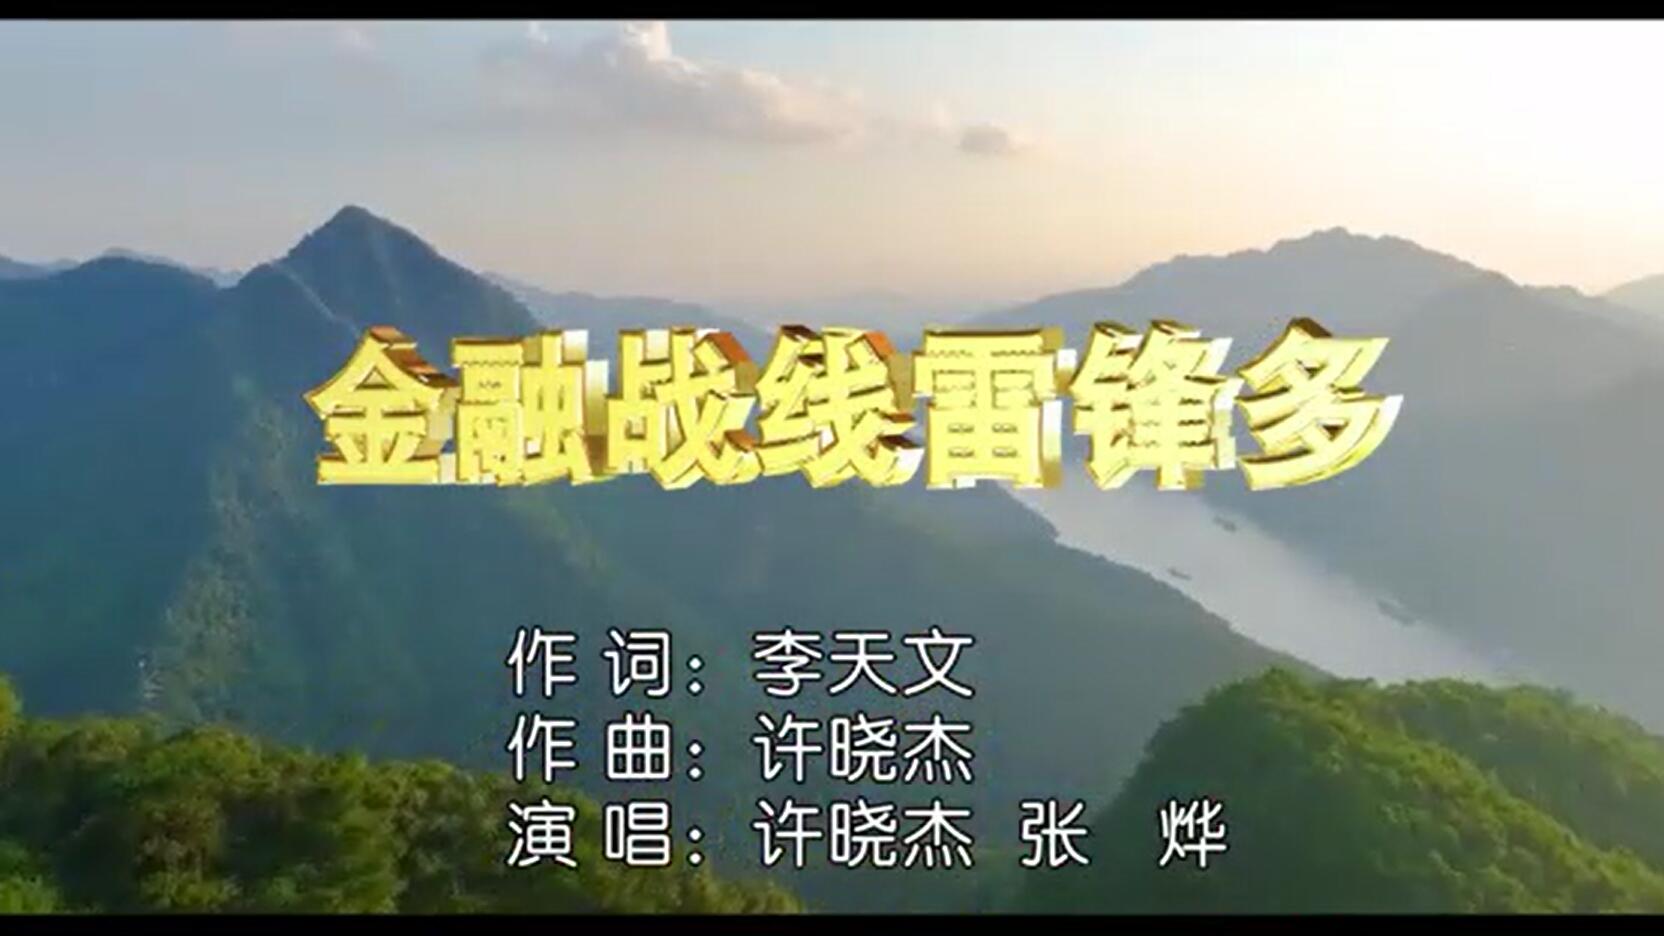 共和国三位将军监制，《金融战线雷锋多》MV发布——纪念毛泽东等老一辈 